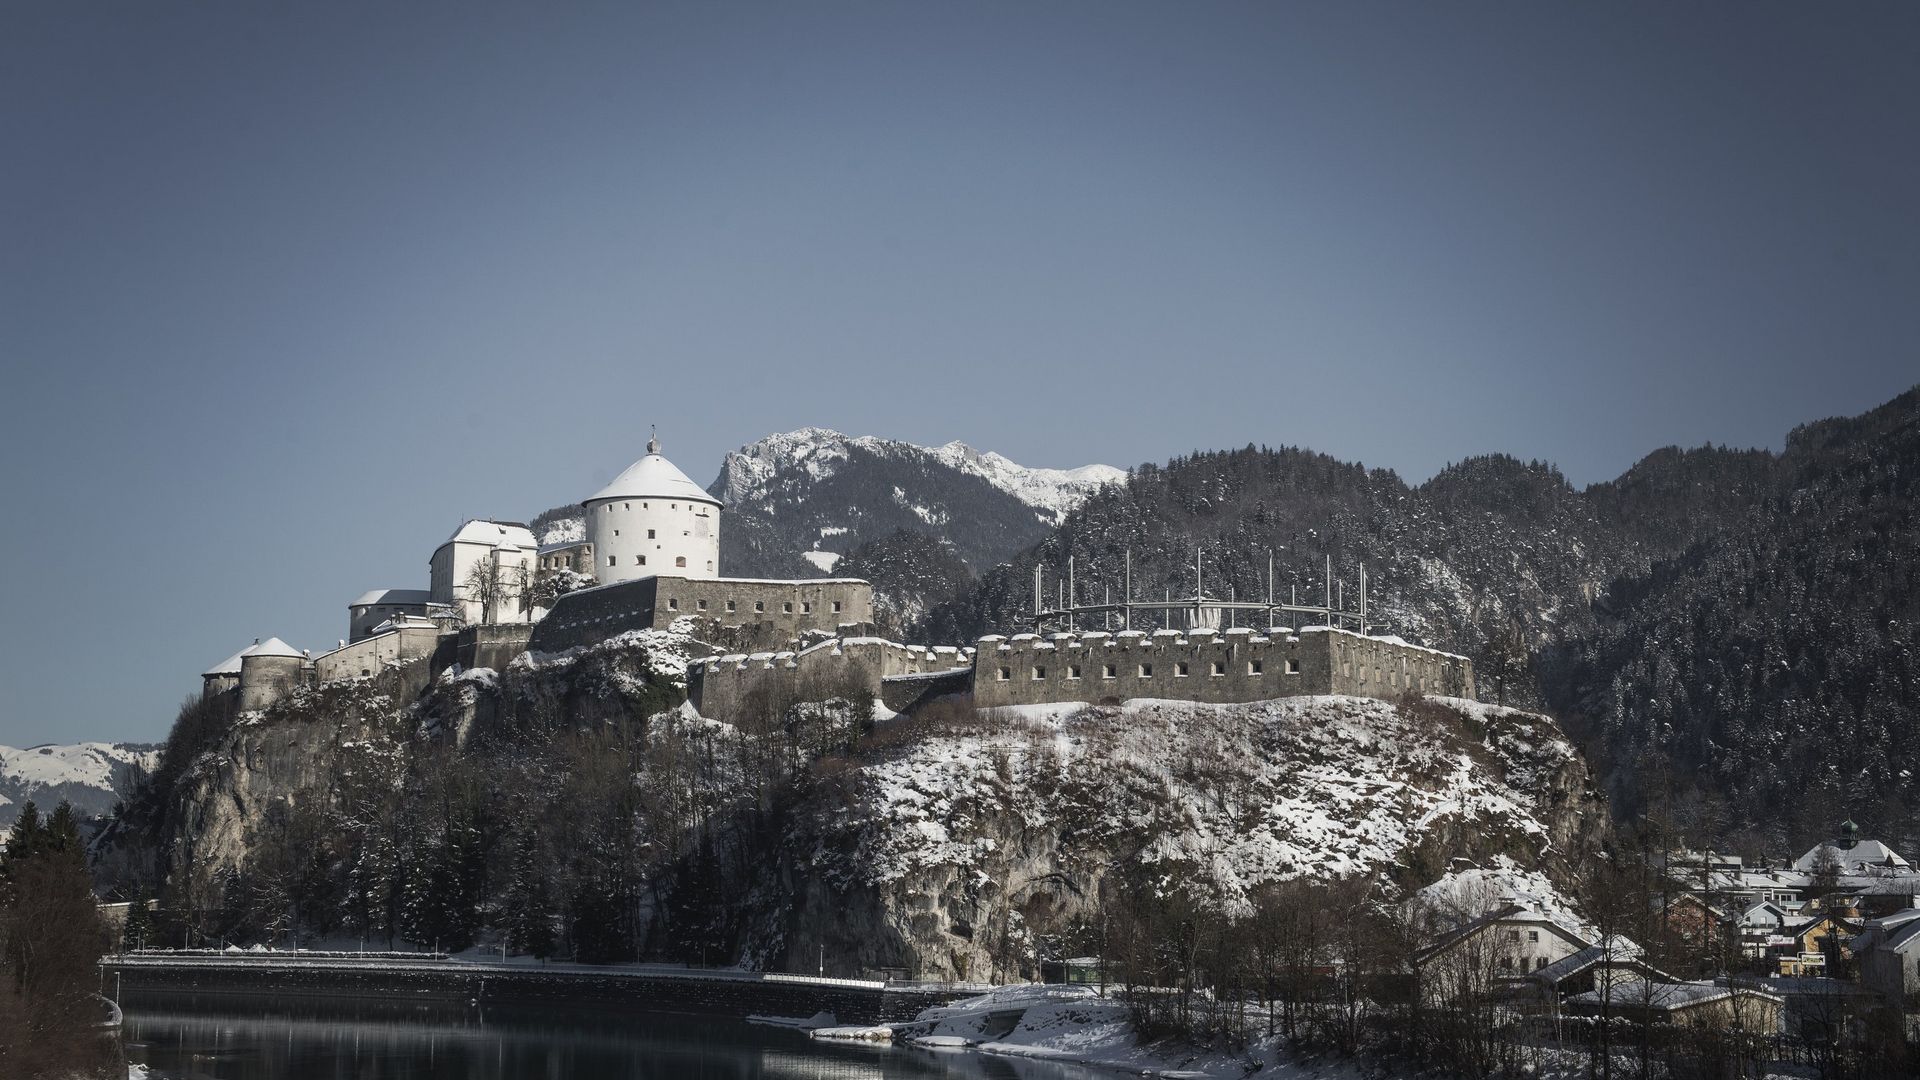 Lohnendes Ausflugsziel am Achensee: Festung Kufstein im Winter